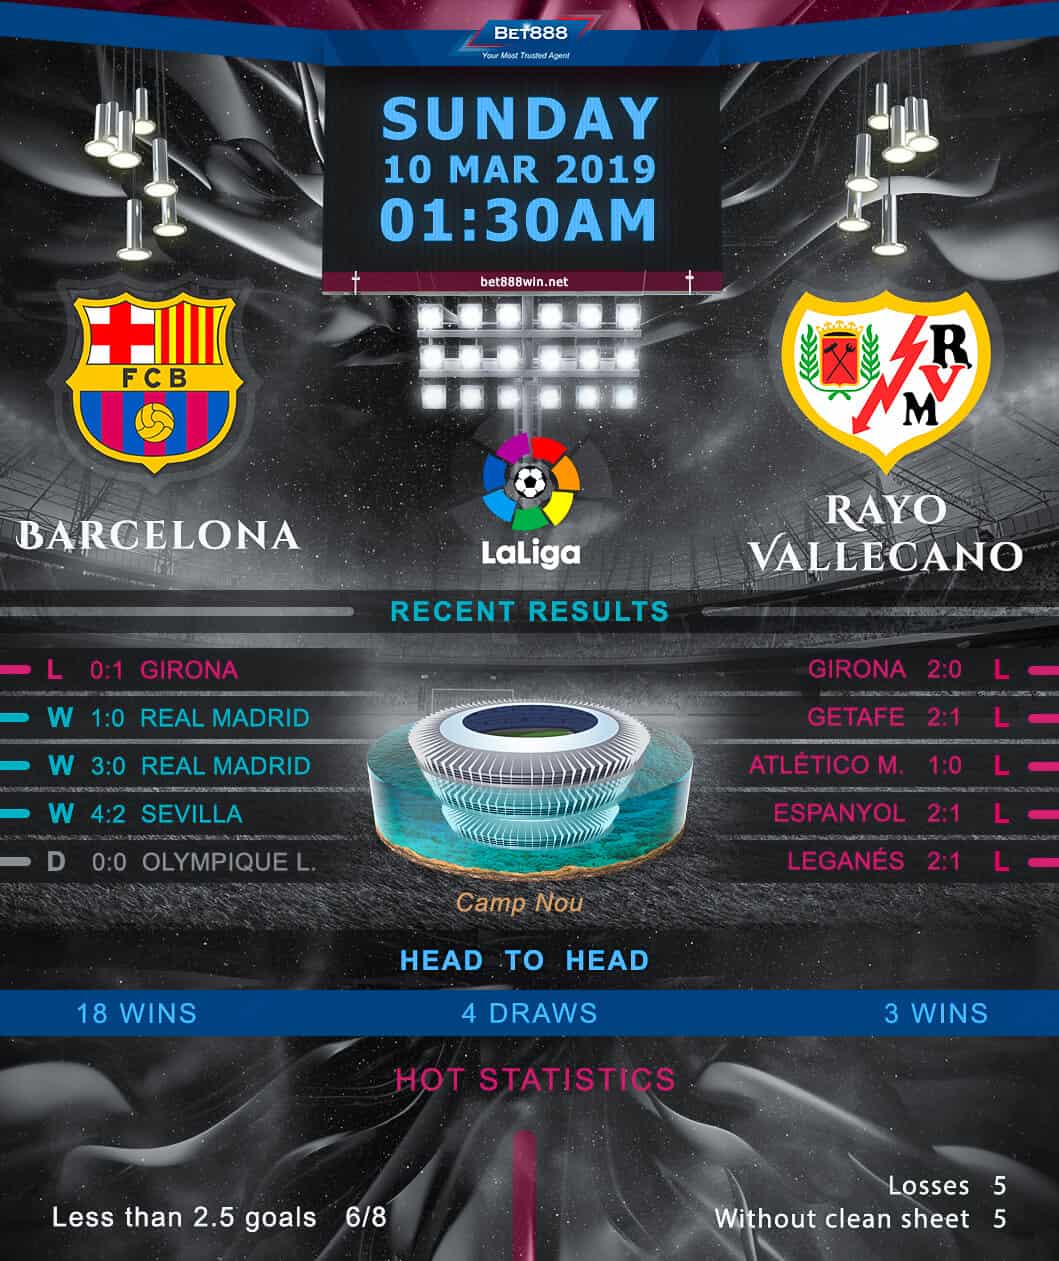 Barcelona vs Rayo Vallecano 10/03/19